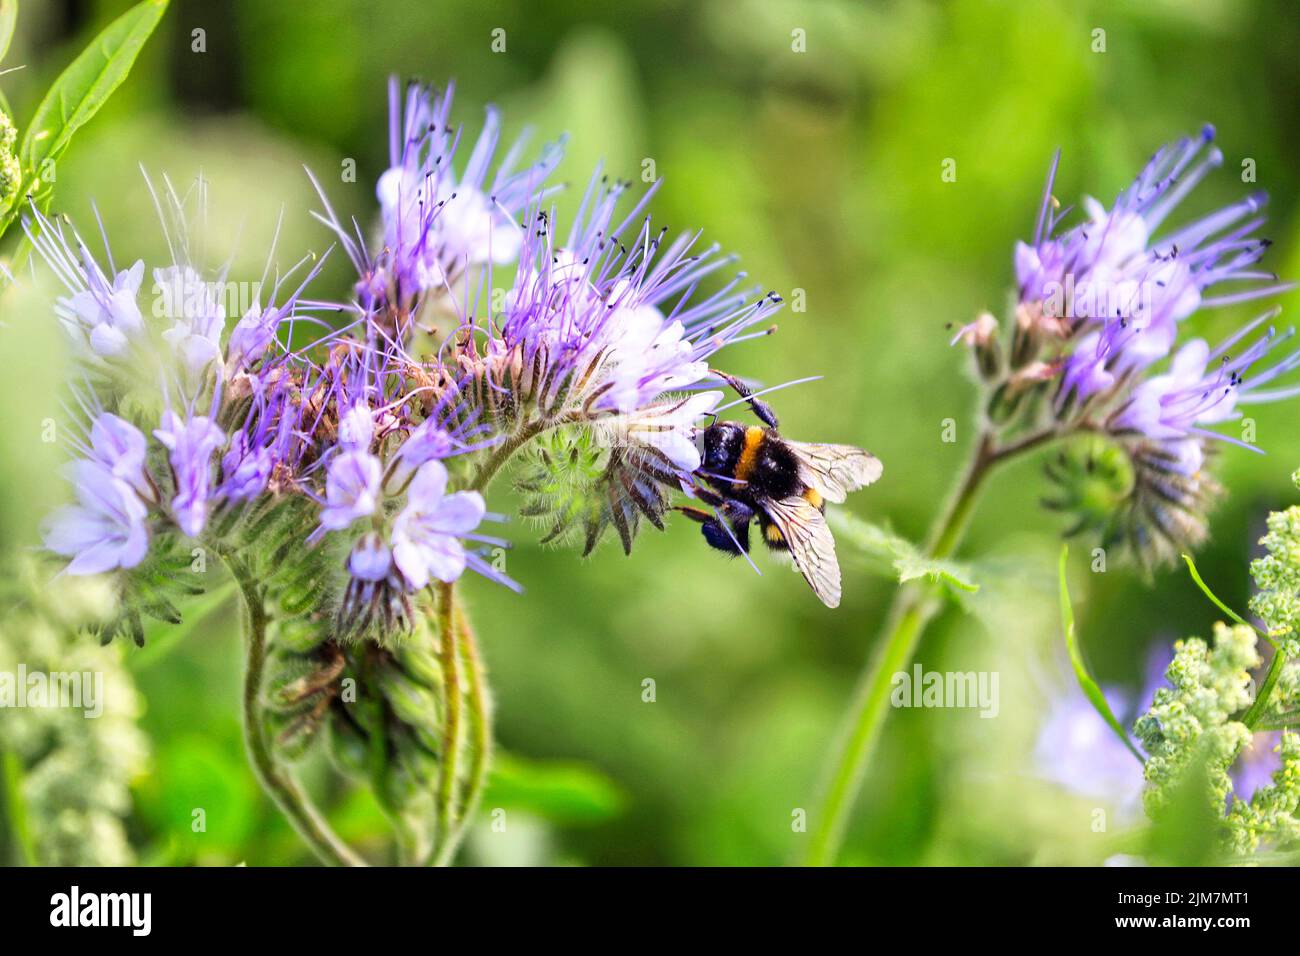 Bumblebee, insecte pollinisateur de Bombus spp, se nourrissant sur le nectar de Lacy phacelia, Phacelia tanacetifolia, souvent utilisé comme plante d'abeille ou culture de couverture. S Banque D'Images